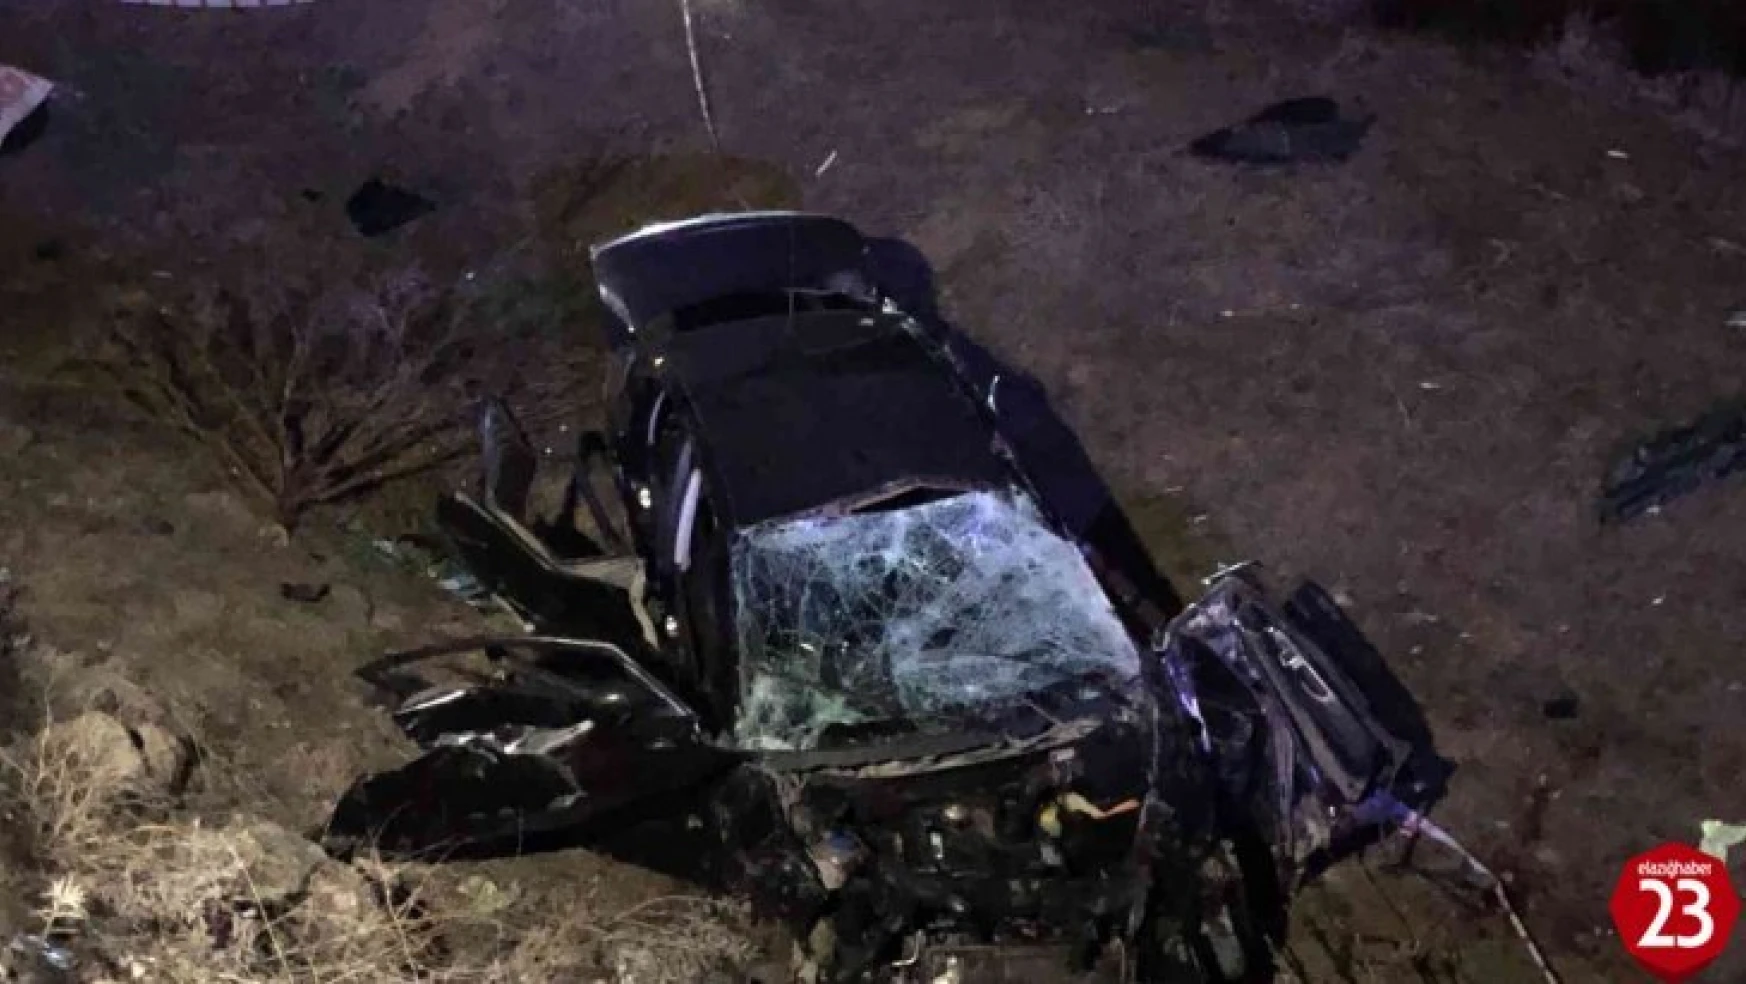 Elazığ Bingöl Yolundaki Trafik Kazasında Ölü Sayısı 2'ye Yükseldi